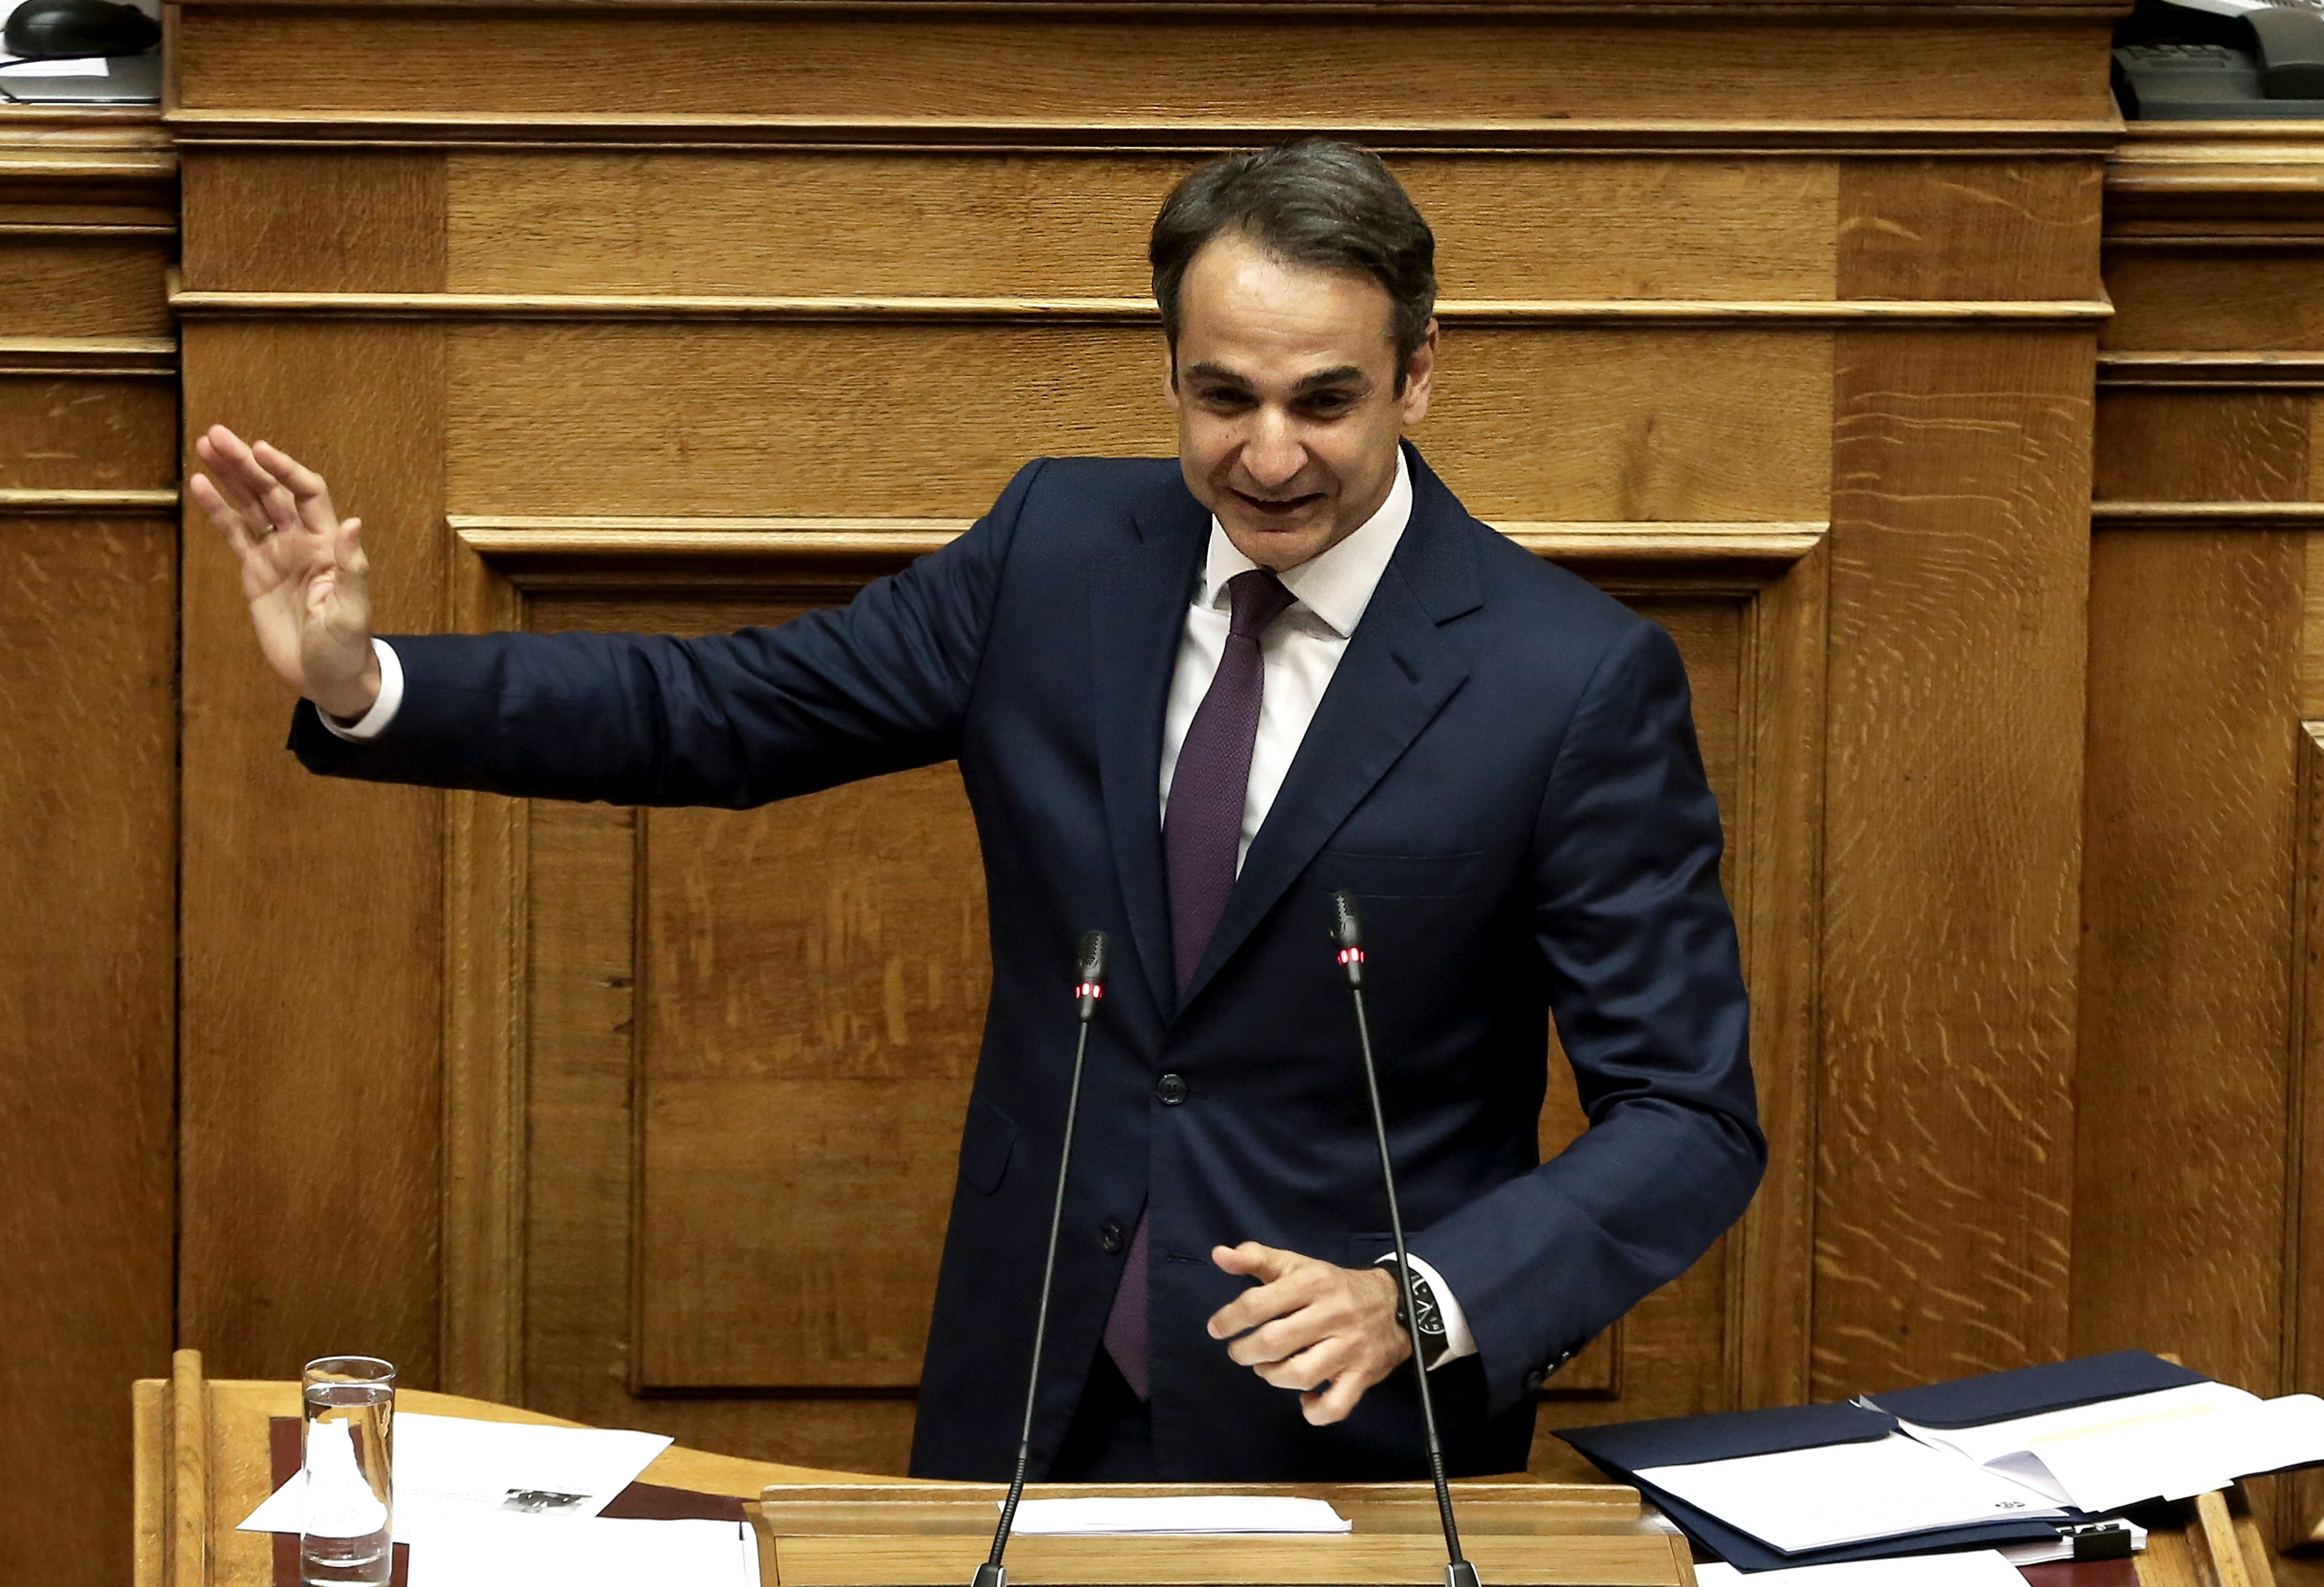 Rouvikonas openly threatens main opposition leader Kyriakos Mitsotakis